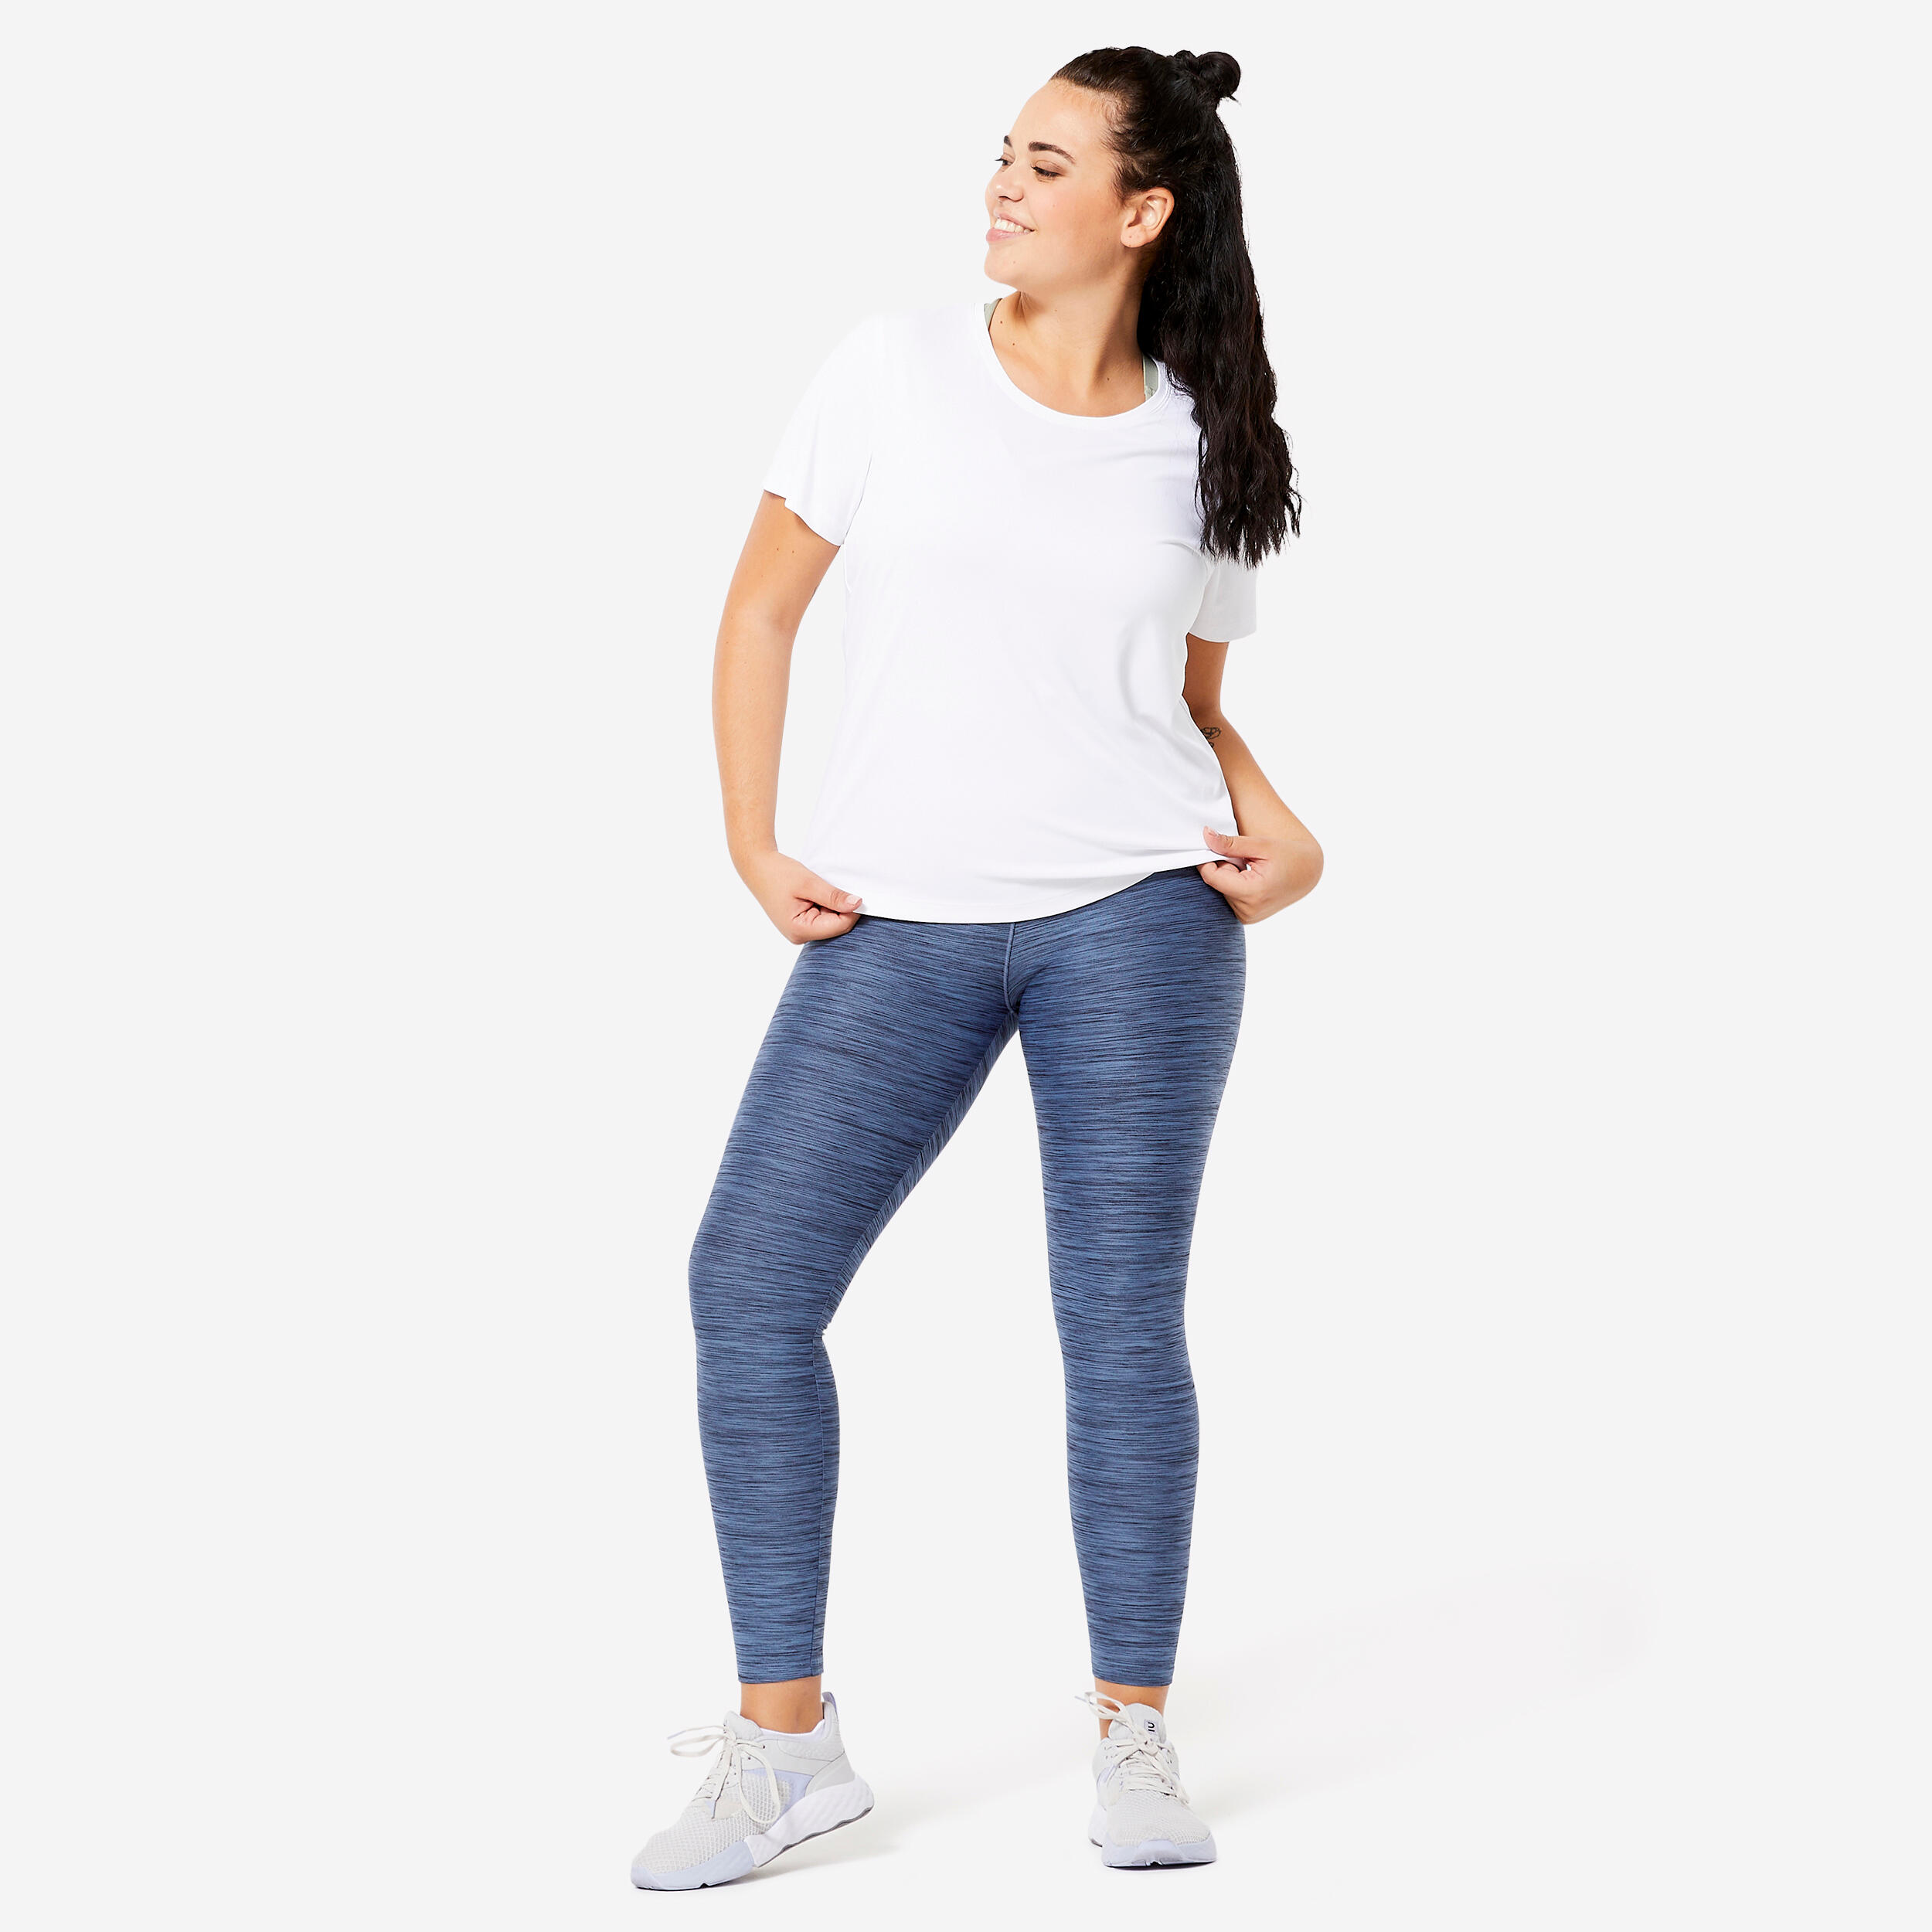 Women's Short-Sleeved Cardio Fitness T-Shirt - White 2/6